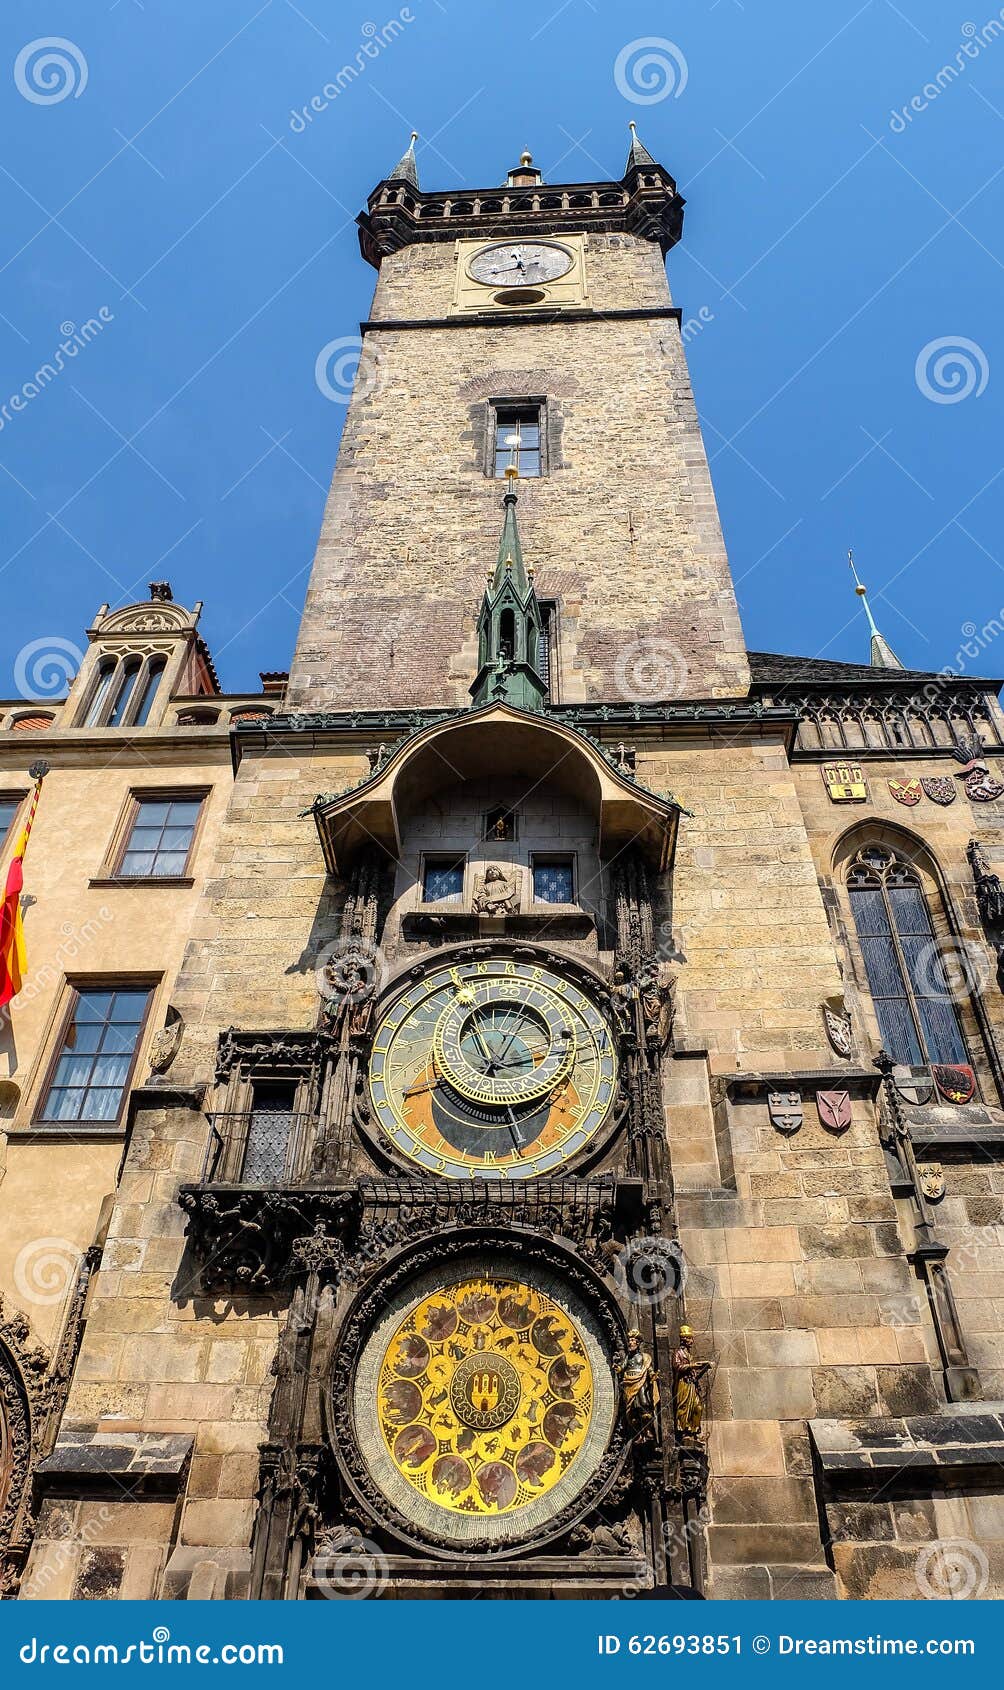 old town hall clock prague - czech republic